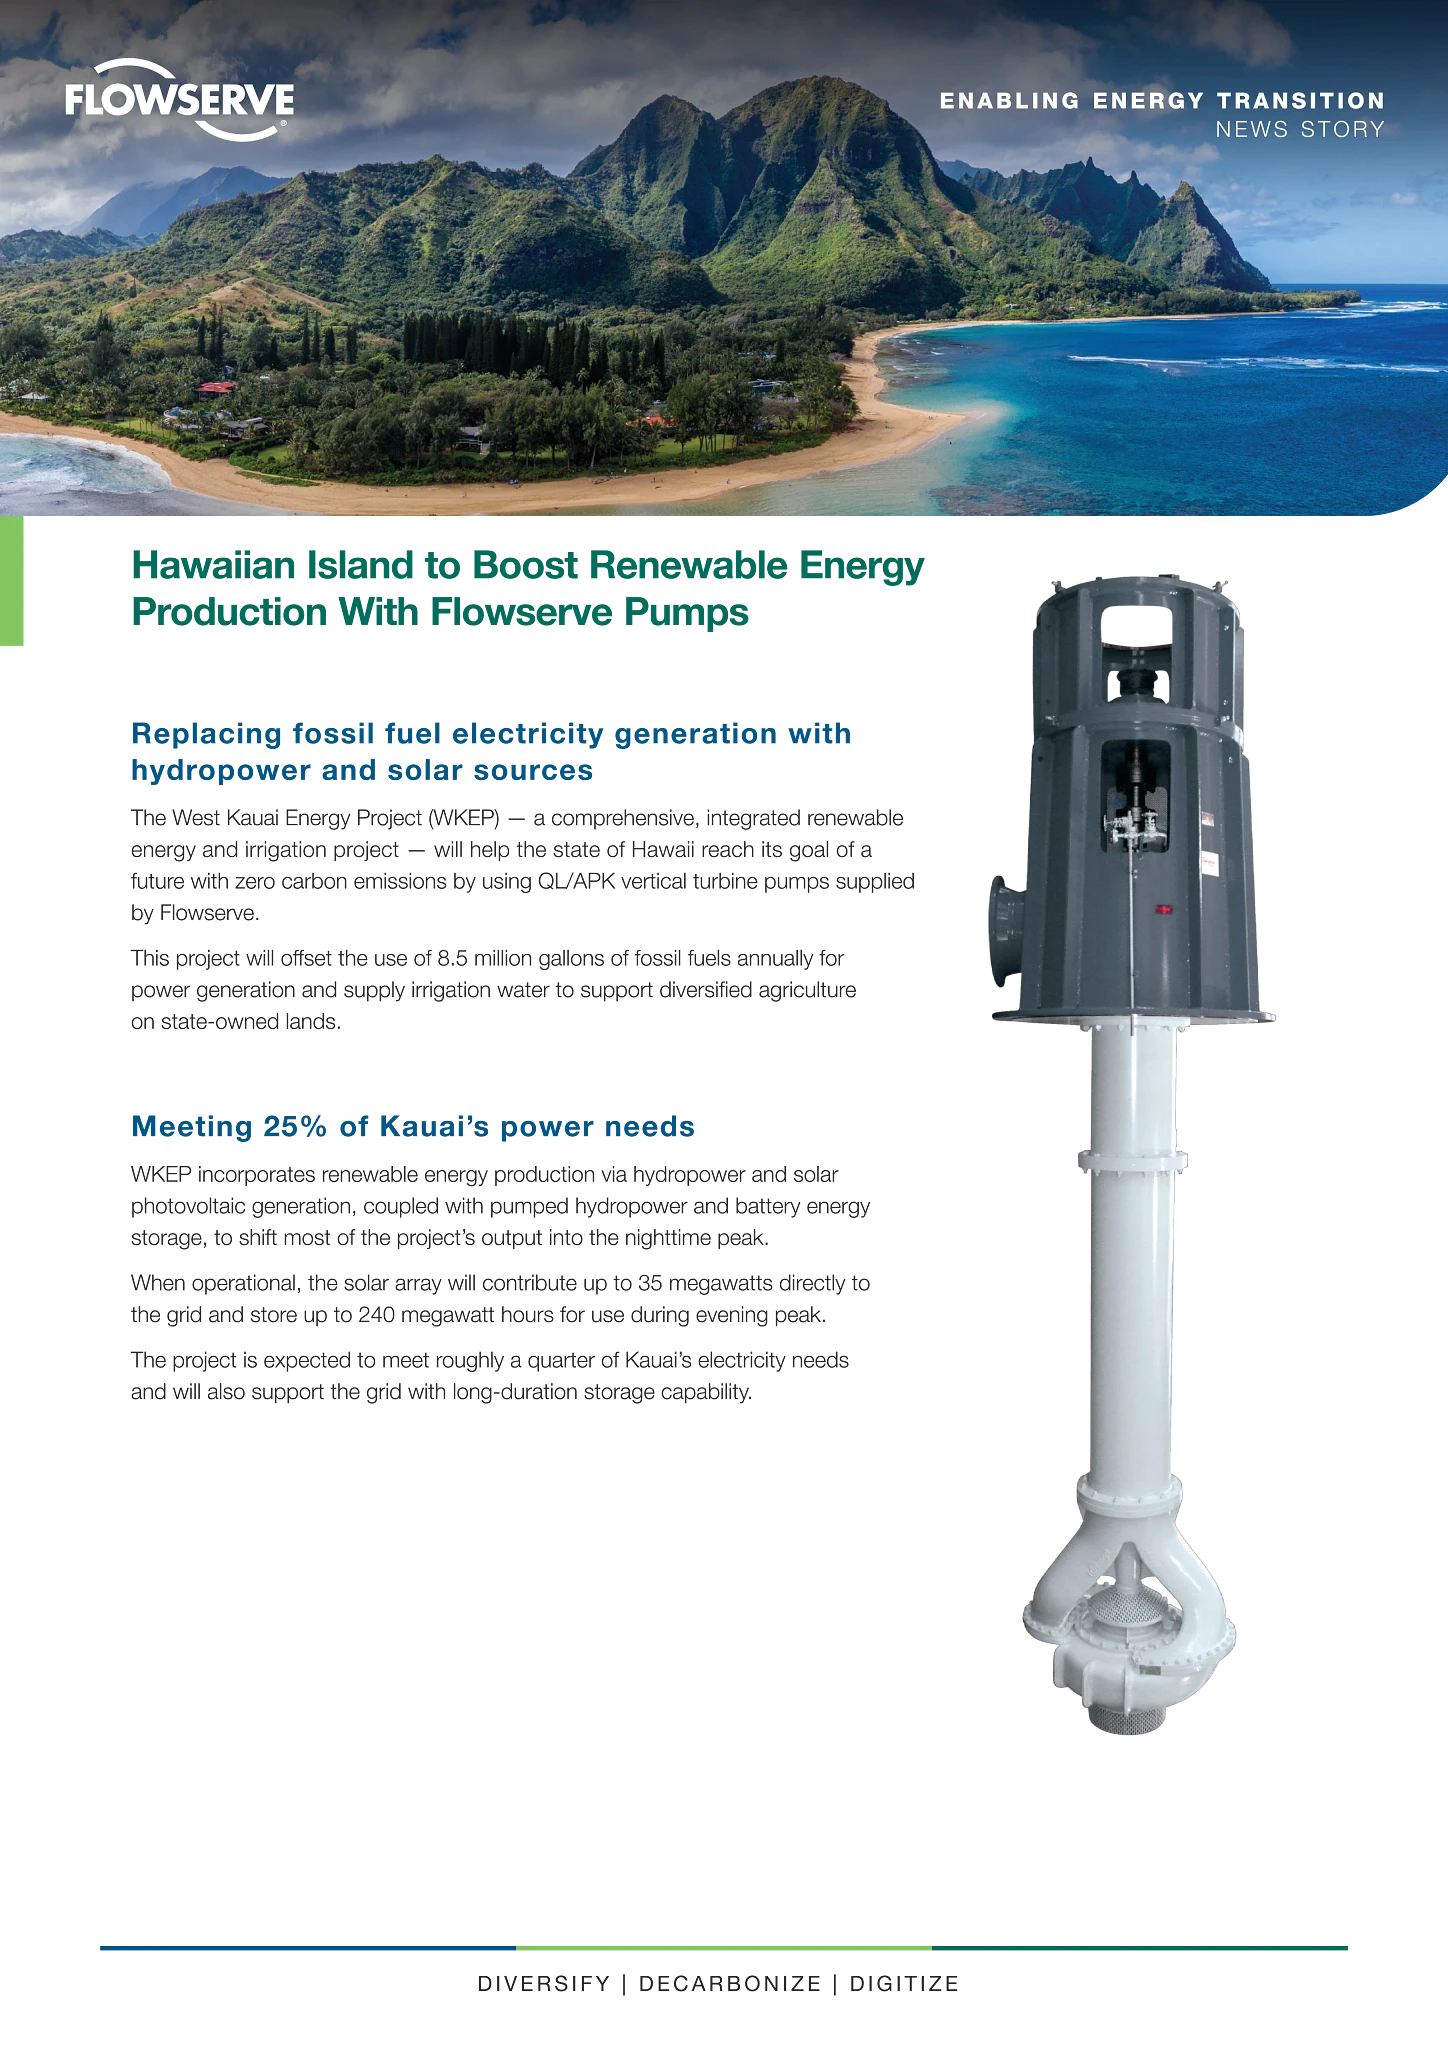 夏威夷岛利用Flowserve泵促进可再生能源生产